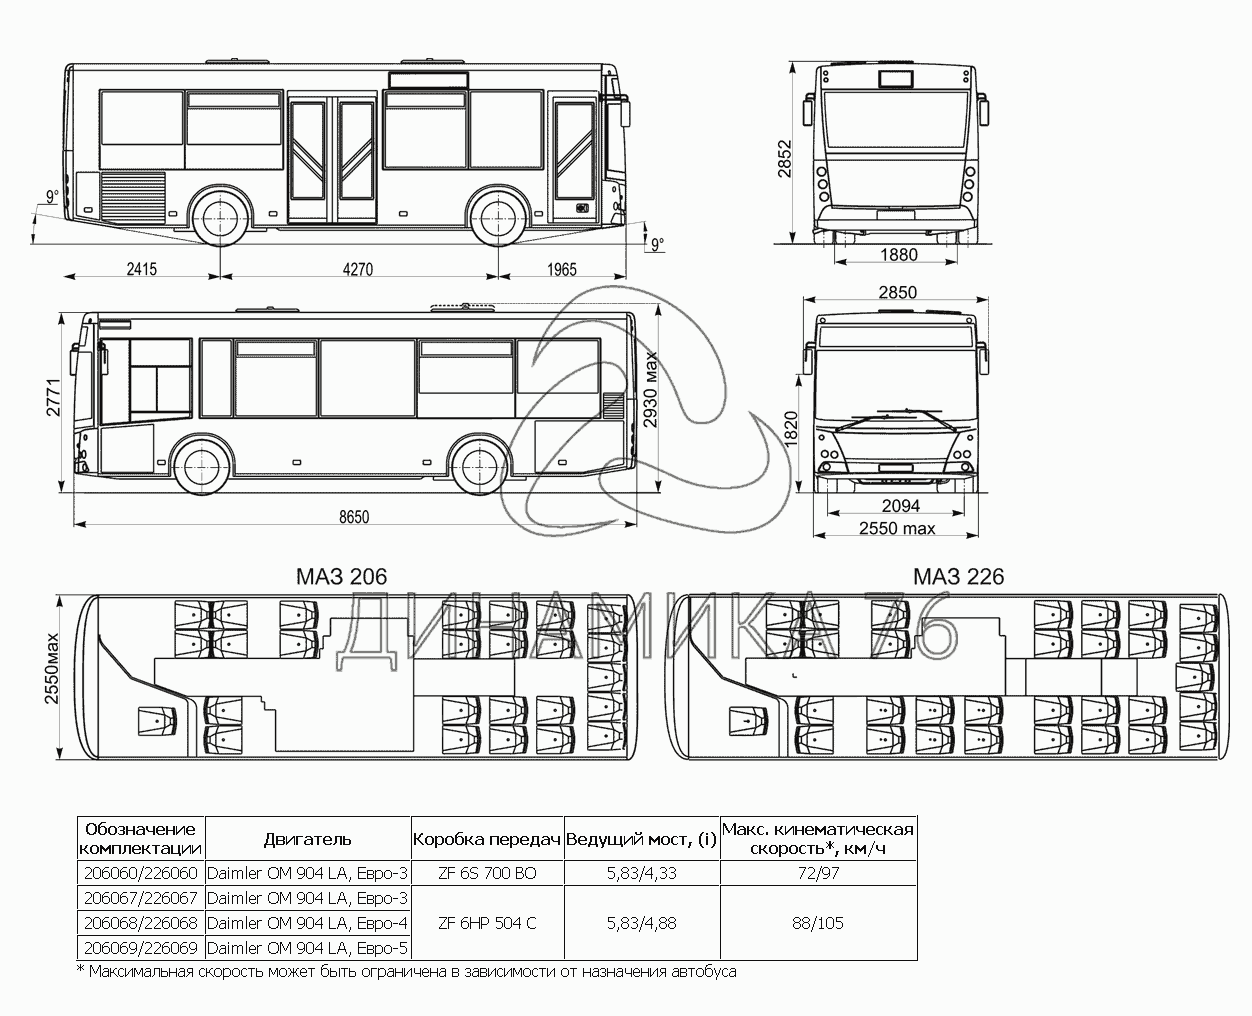 Автобус маз 206, маз 226. мануал - часть 1